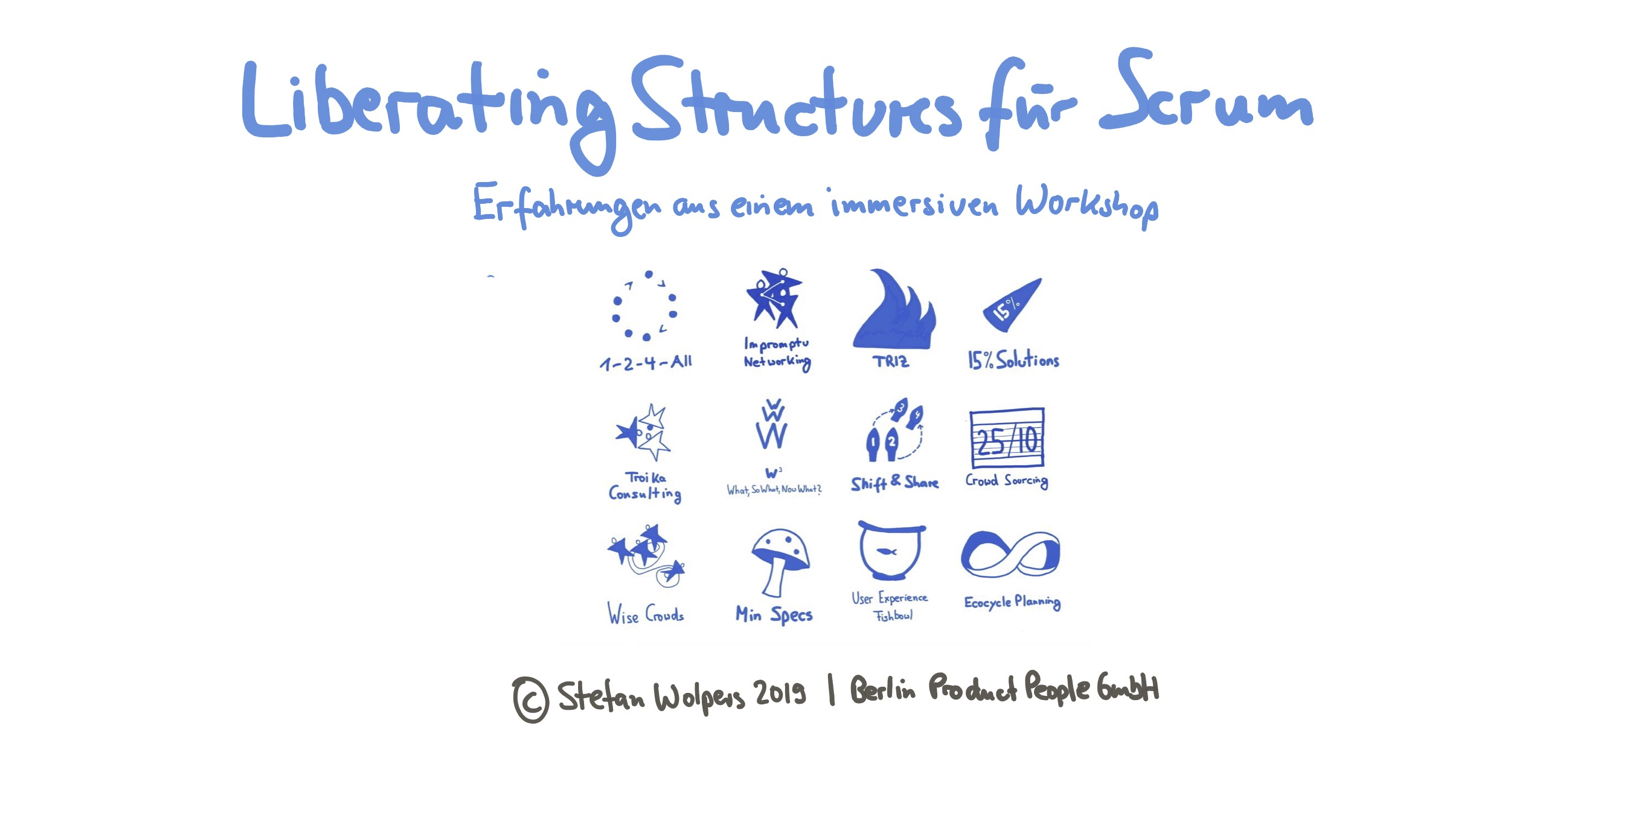 Liberating Structures Workshop für Scrum: Erfahrungen aus einem immersiven Workshop — Berlin Product People GmbH